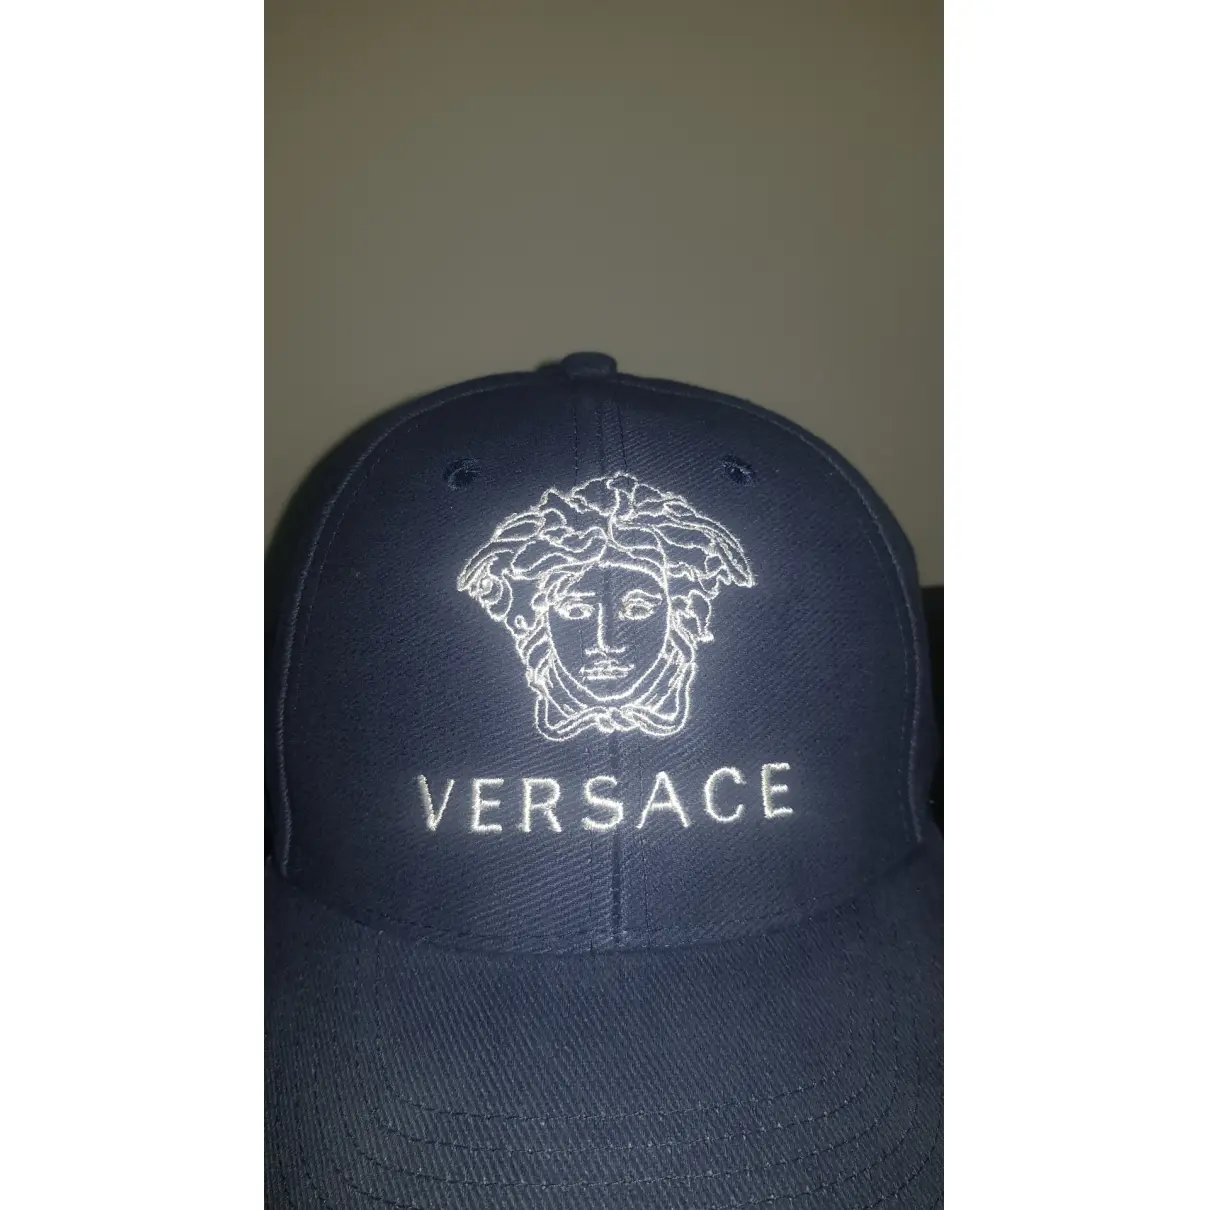 Luxury Versace Hats & pull on hats Men